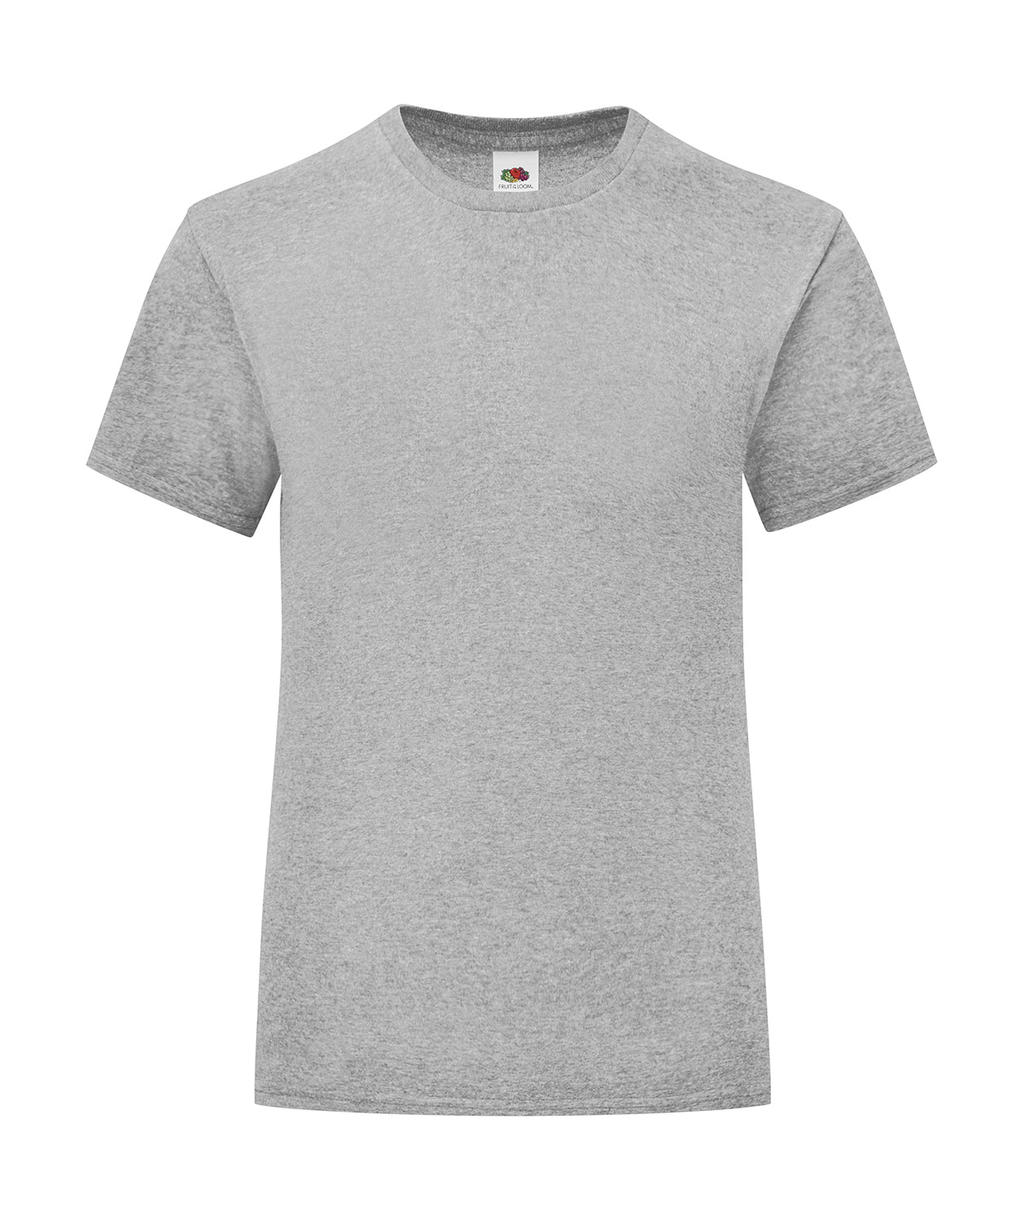 Dívčí tričko Iconic T 150 Barva: světle šedý melír, Velikost: 3-4 roky